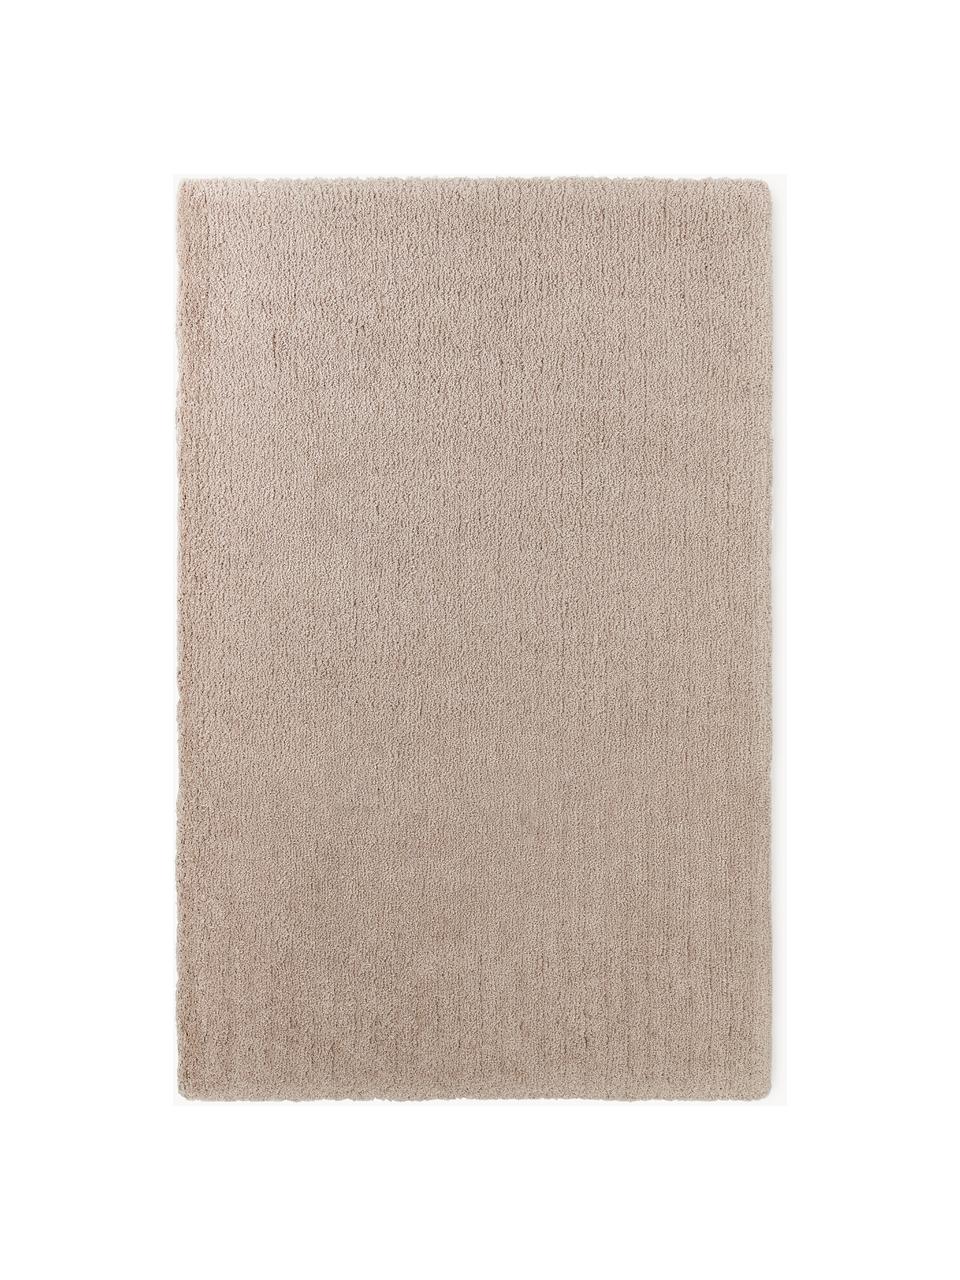 Načechraný koberec s vysokým vlasem Leighton, Béžová, Š 120 cm, D 180 cm (velikost S)